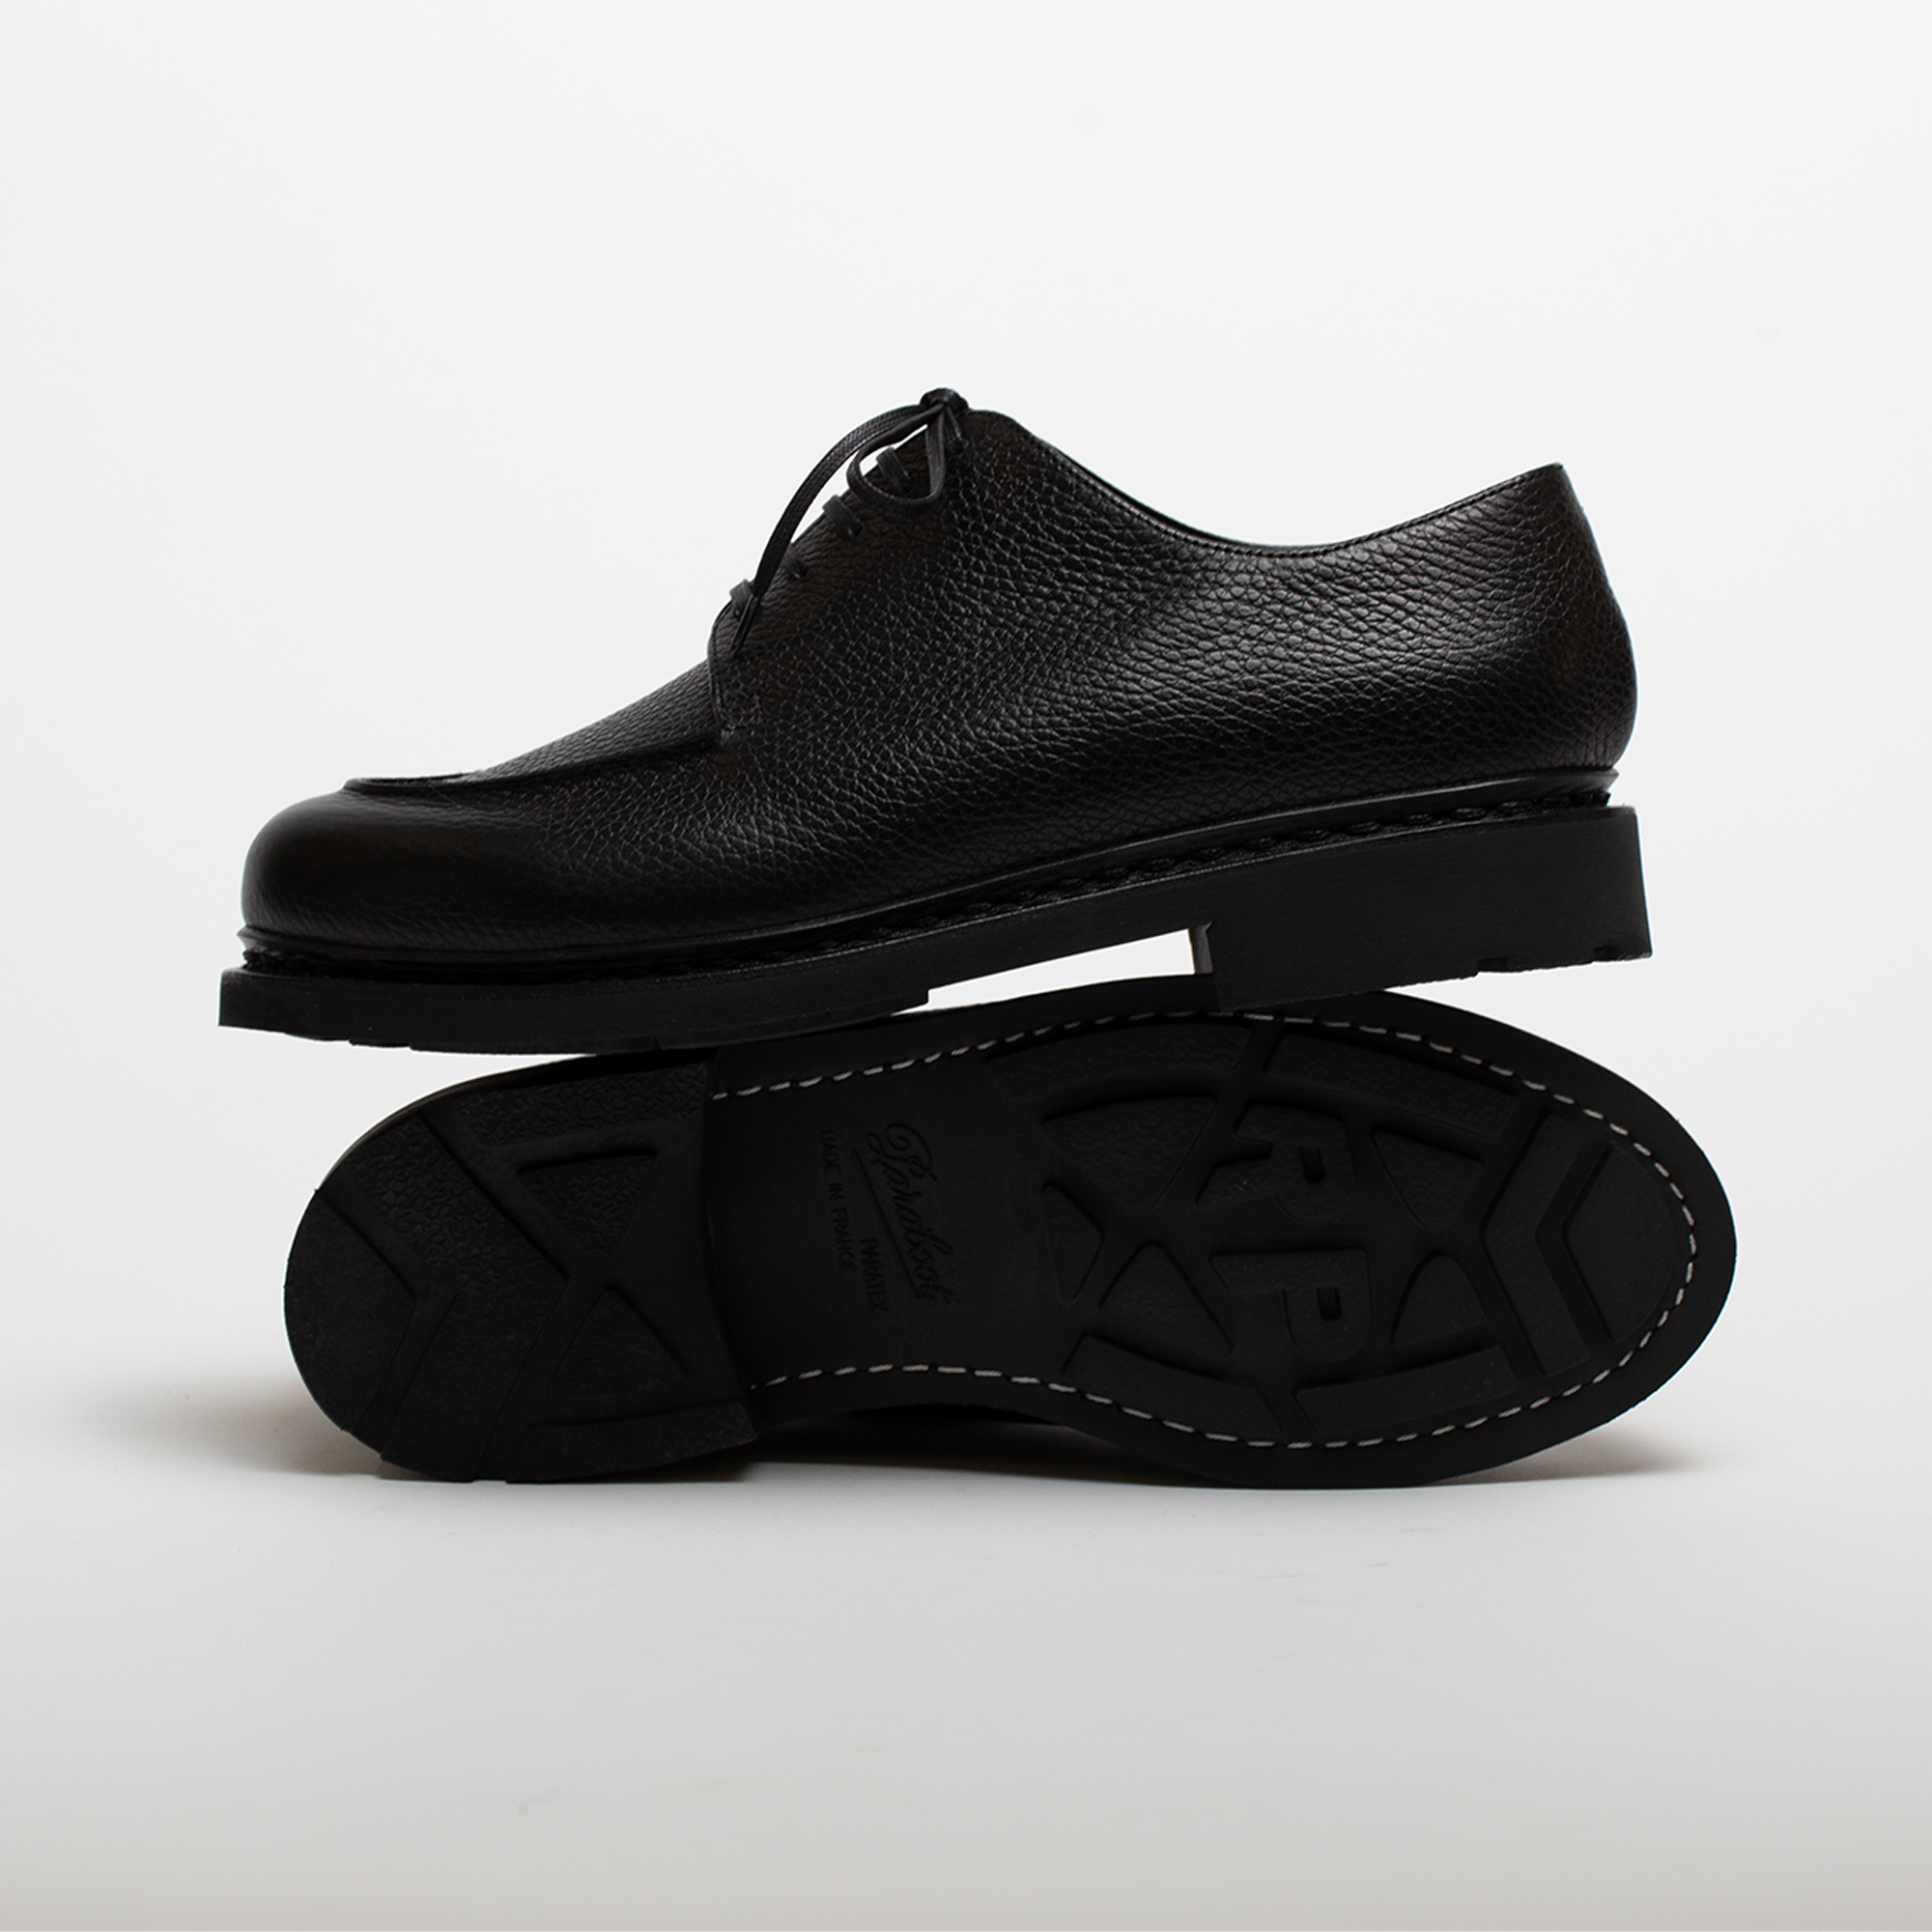 Chaussures MIRAGE coloris Noir par Paraboot pour Arpenteur